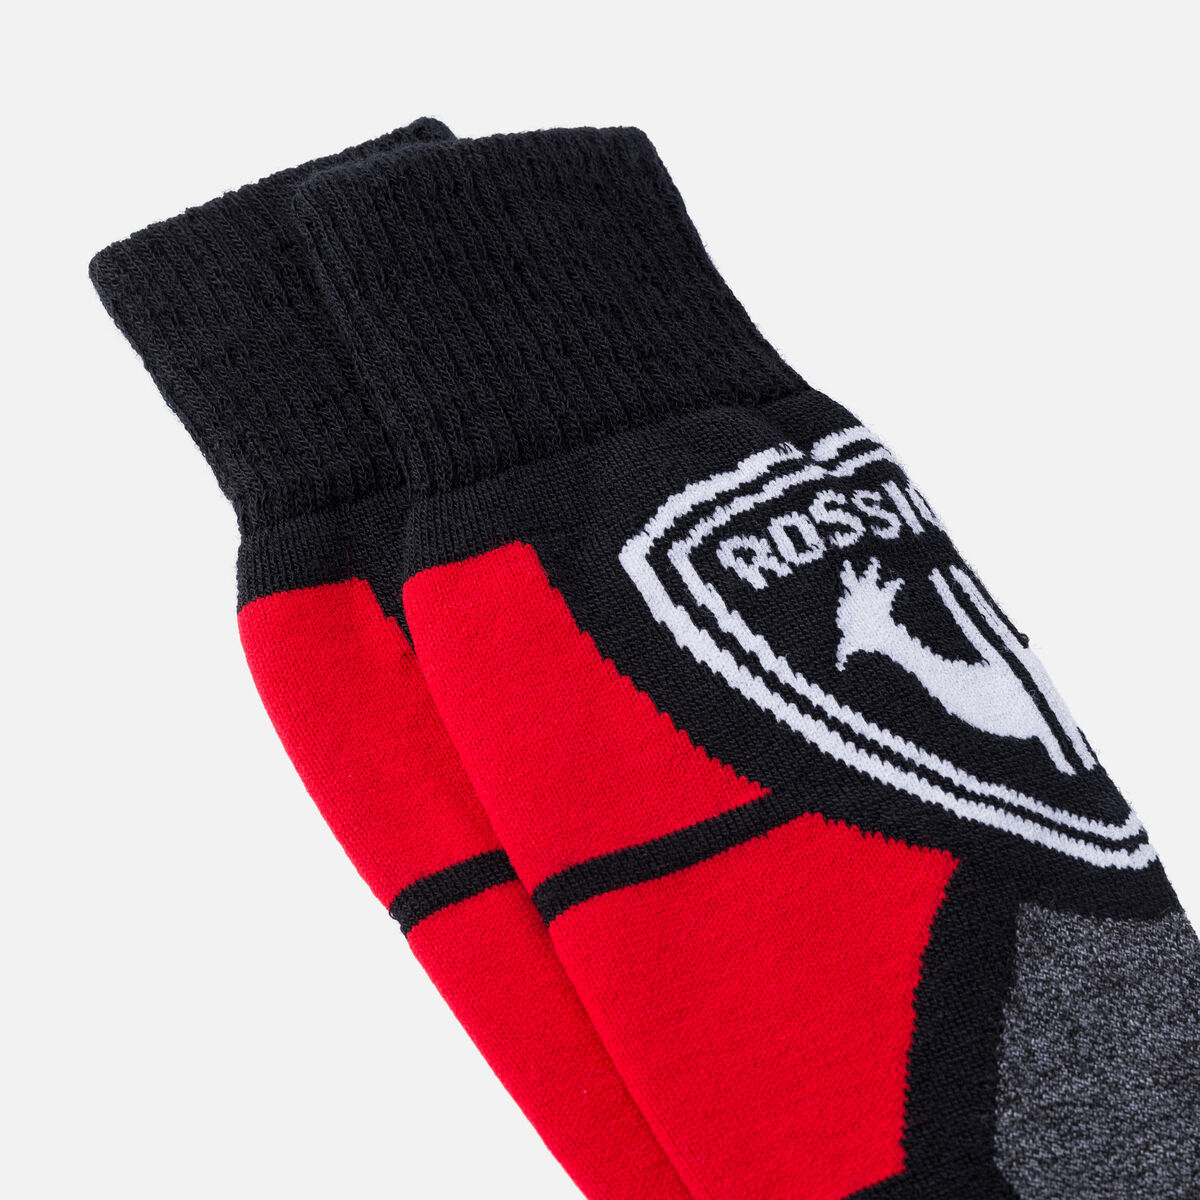 Men's Premium Wool Ski Socks